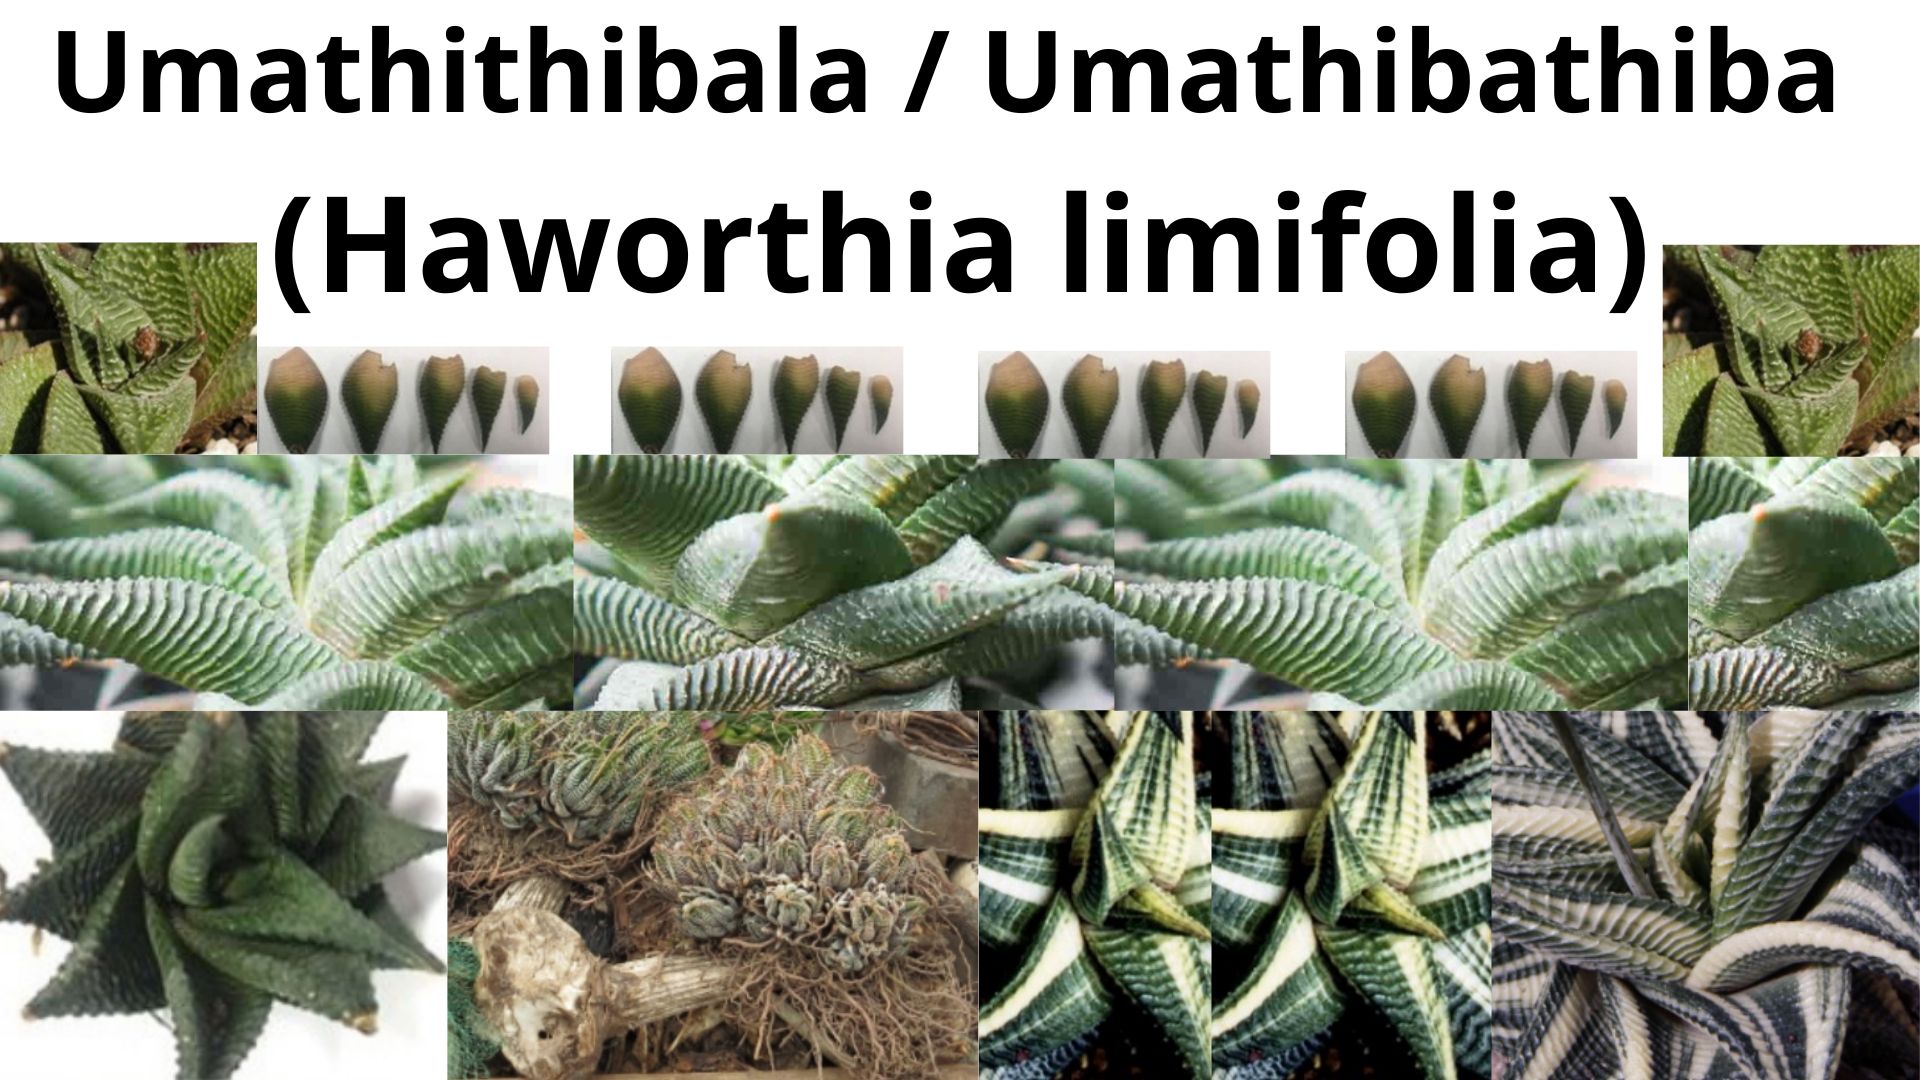 You are currently viewing Haworthia limifolia (Umathithibala)